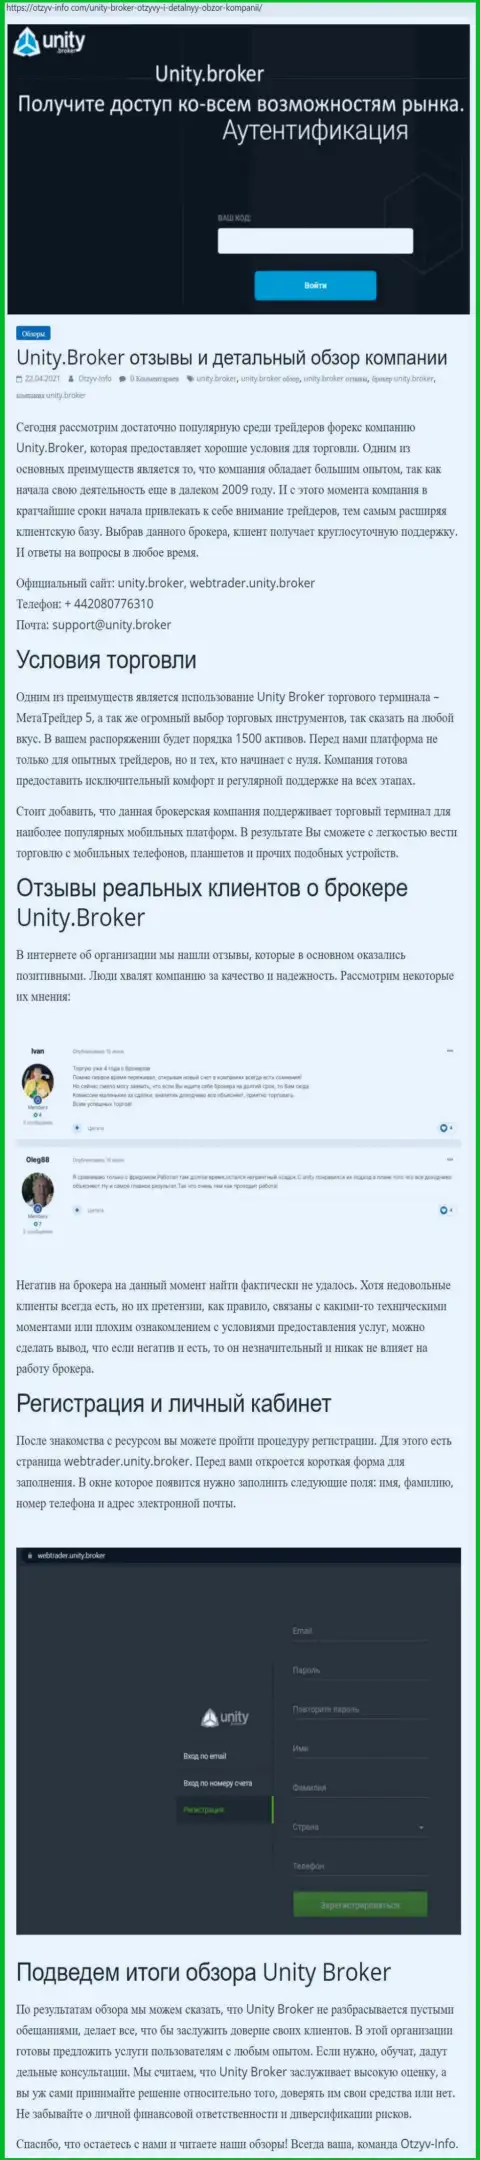 Характеристика деятельности форекс-брокерской организации ЮнитиБрокер на веб-сайте отзыв-инфо ком